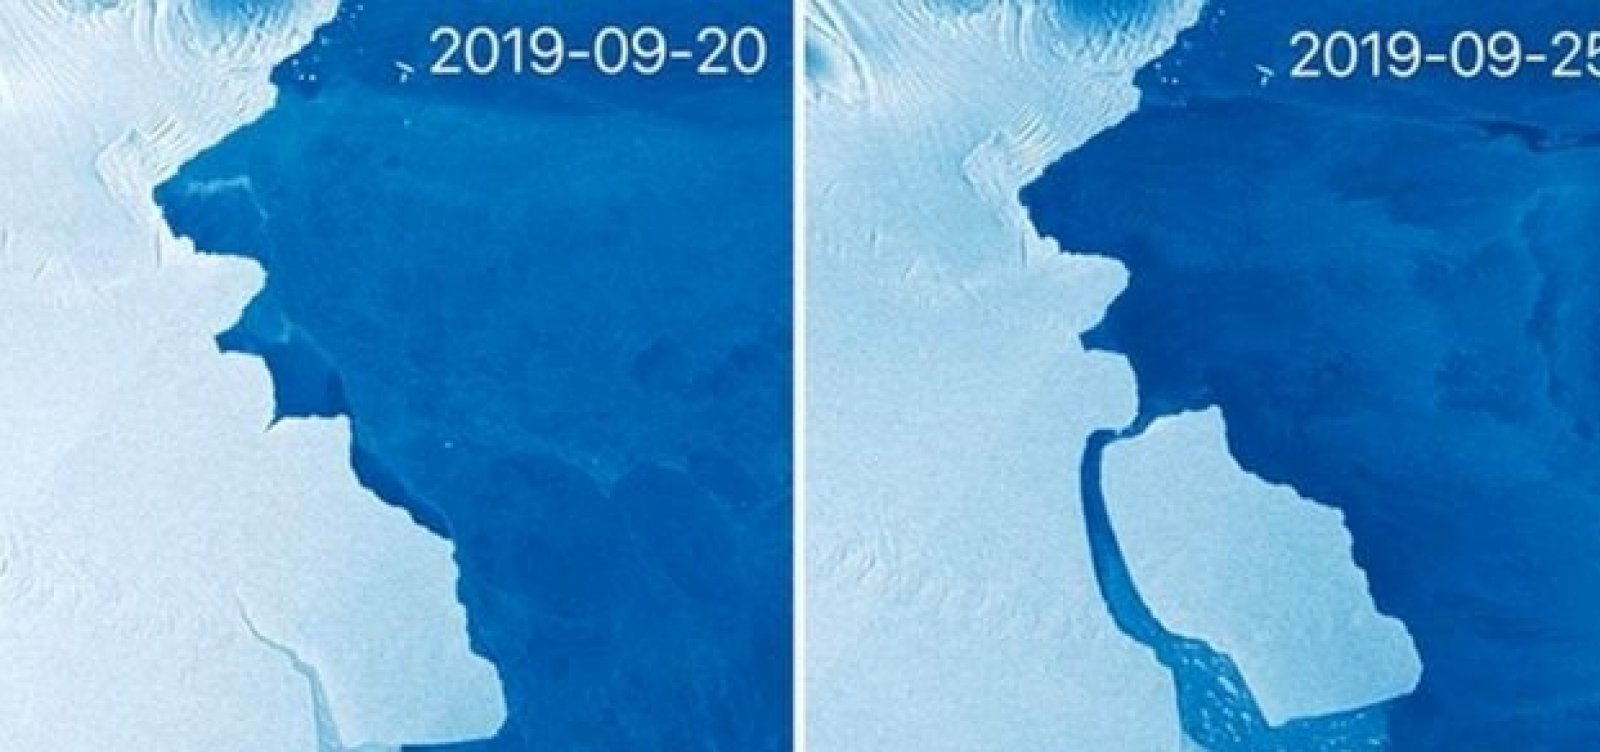 [Na Antártida, Iceberg maior do que a cidade de São Paulo se desprende]